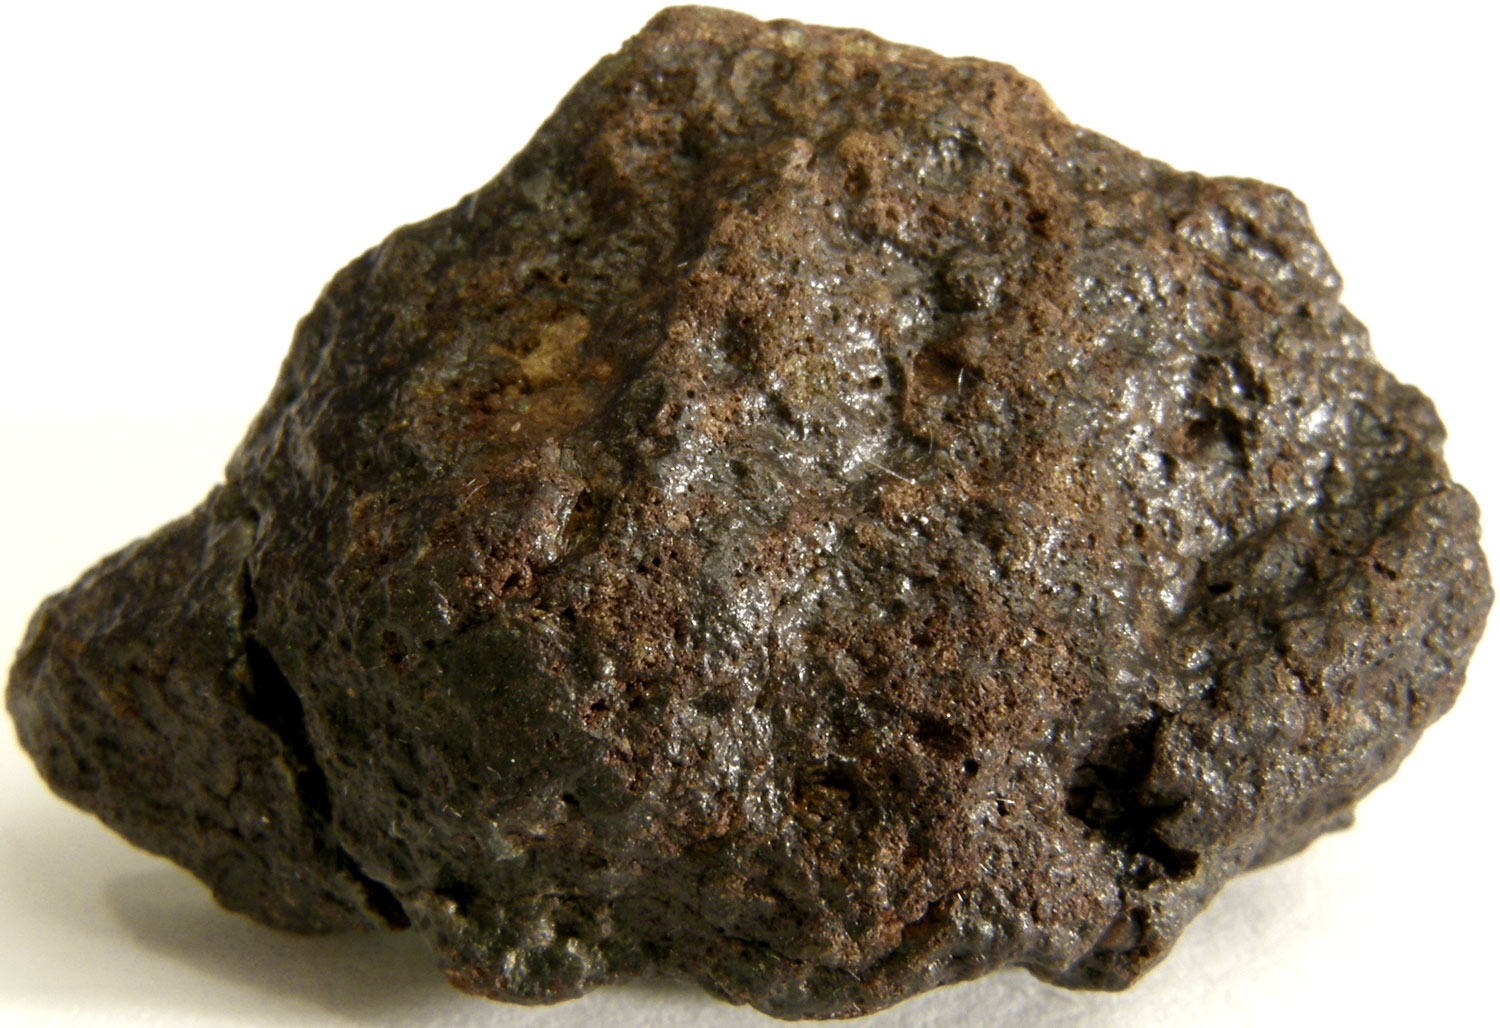 метеорит. NWA%204438%20L3.1%205.2g%20(2%20of%202)-1500